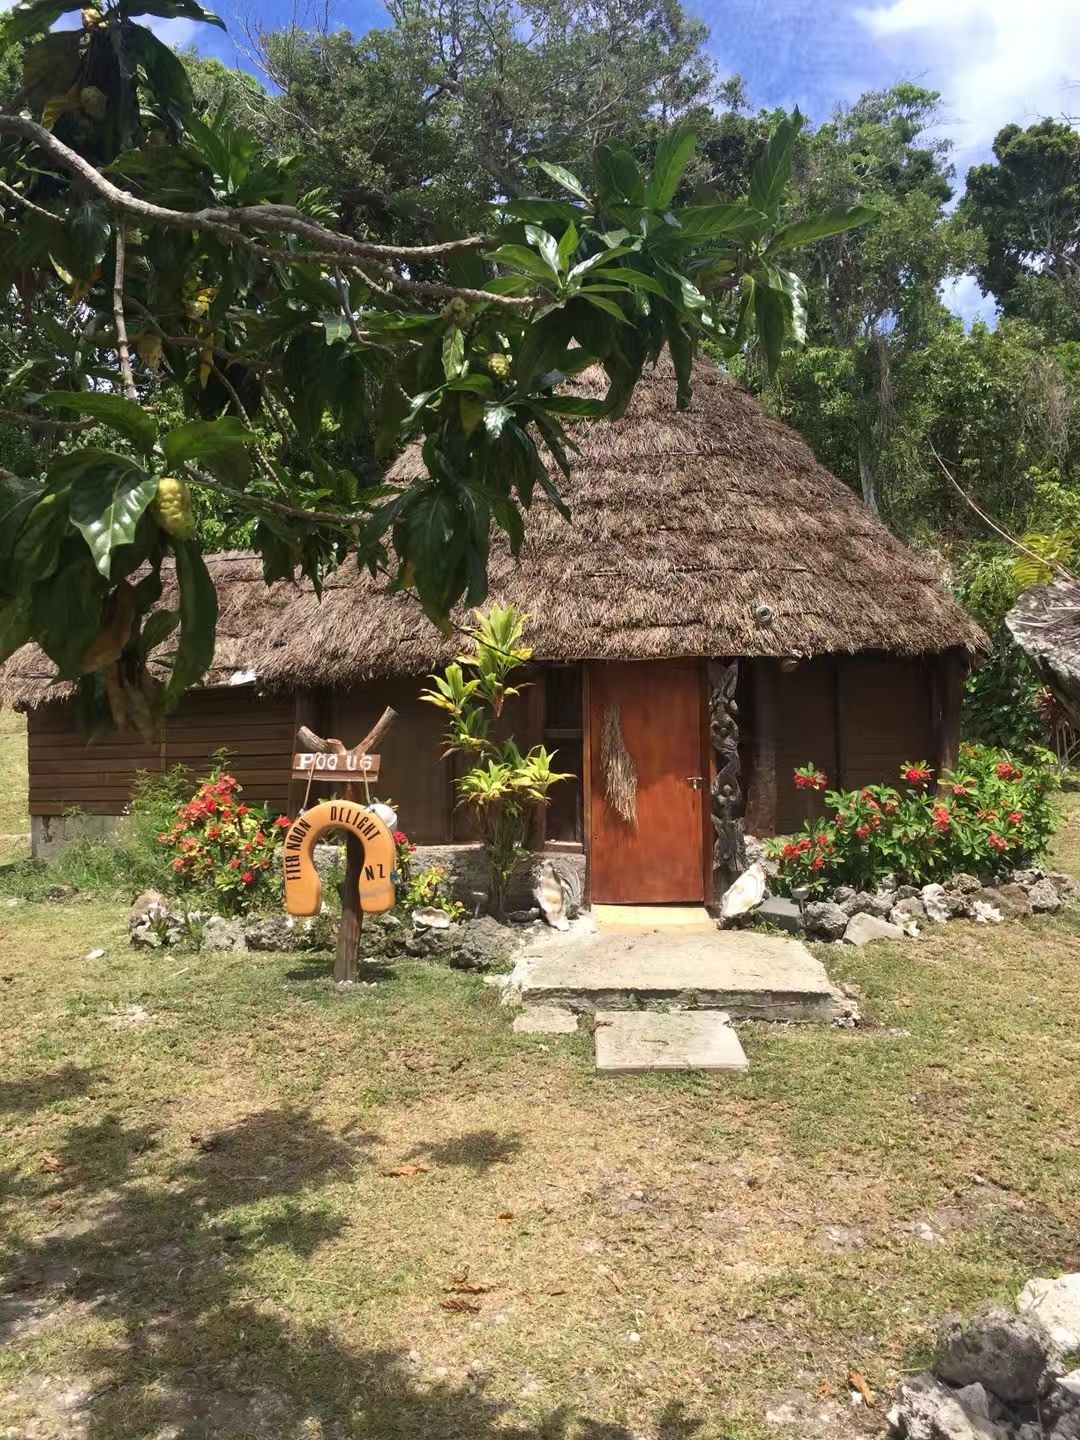 利富岛， 隶属于New Caledonia, 传统， 简单，幸福指数高，只有原始的岛民居住， 医疗卫